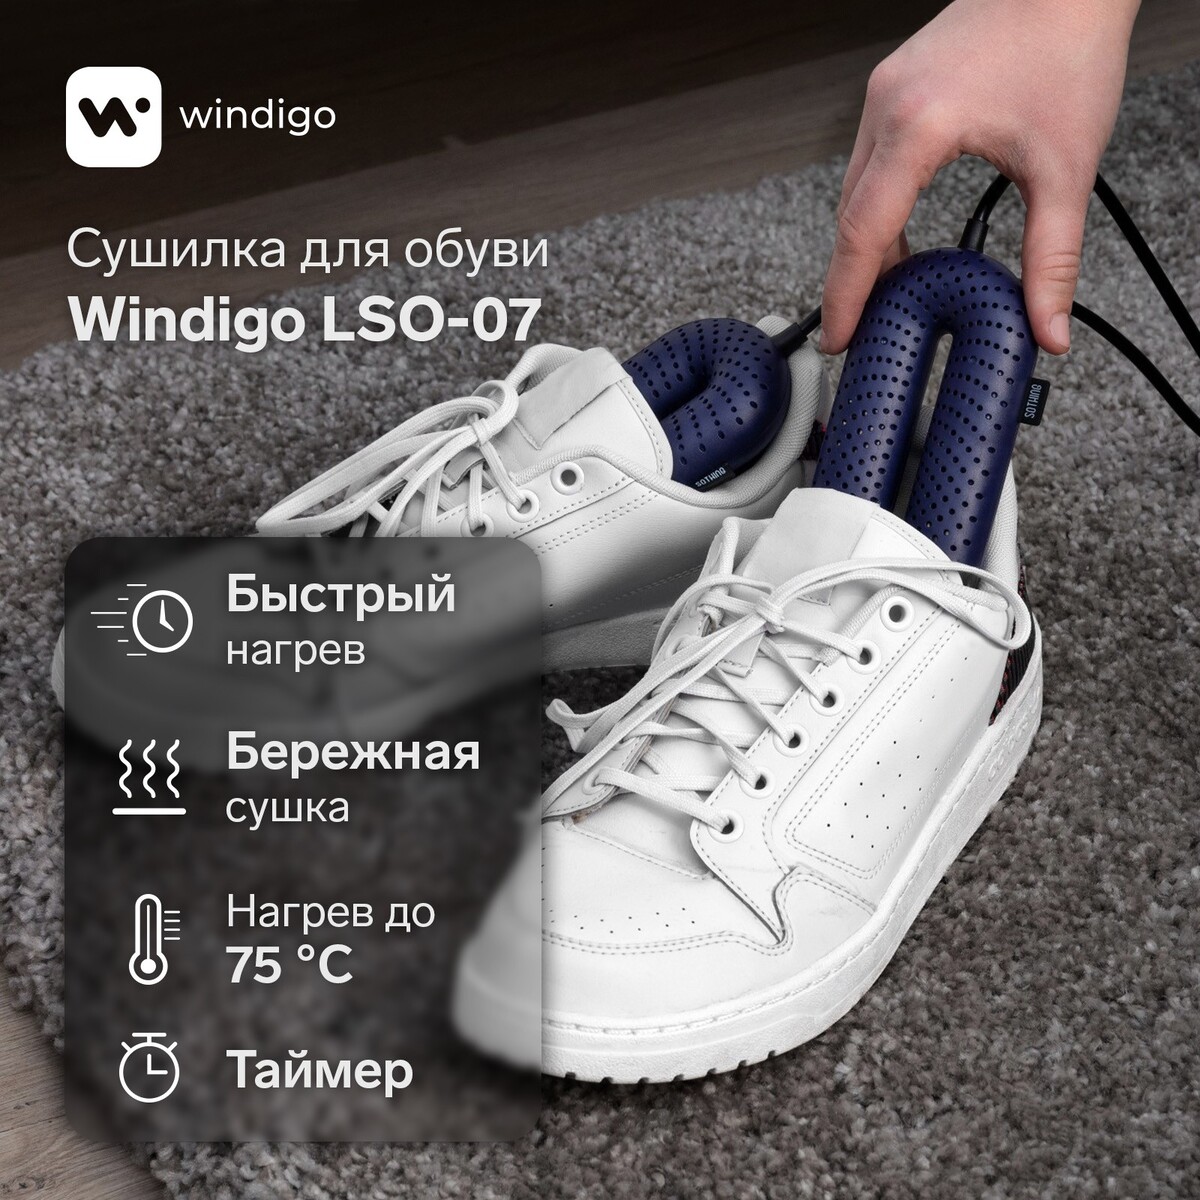 Сушилка для обуви windigo lso-07, 17 см, 20 вт, индикатор, таймер 3/6/9 часов, синяя сушилка для обуви luazon lso 13 17 см 12 вт индикатор синяя